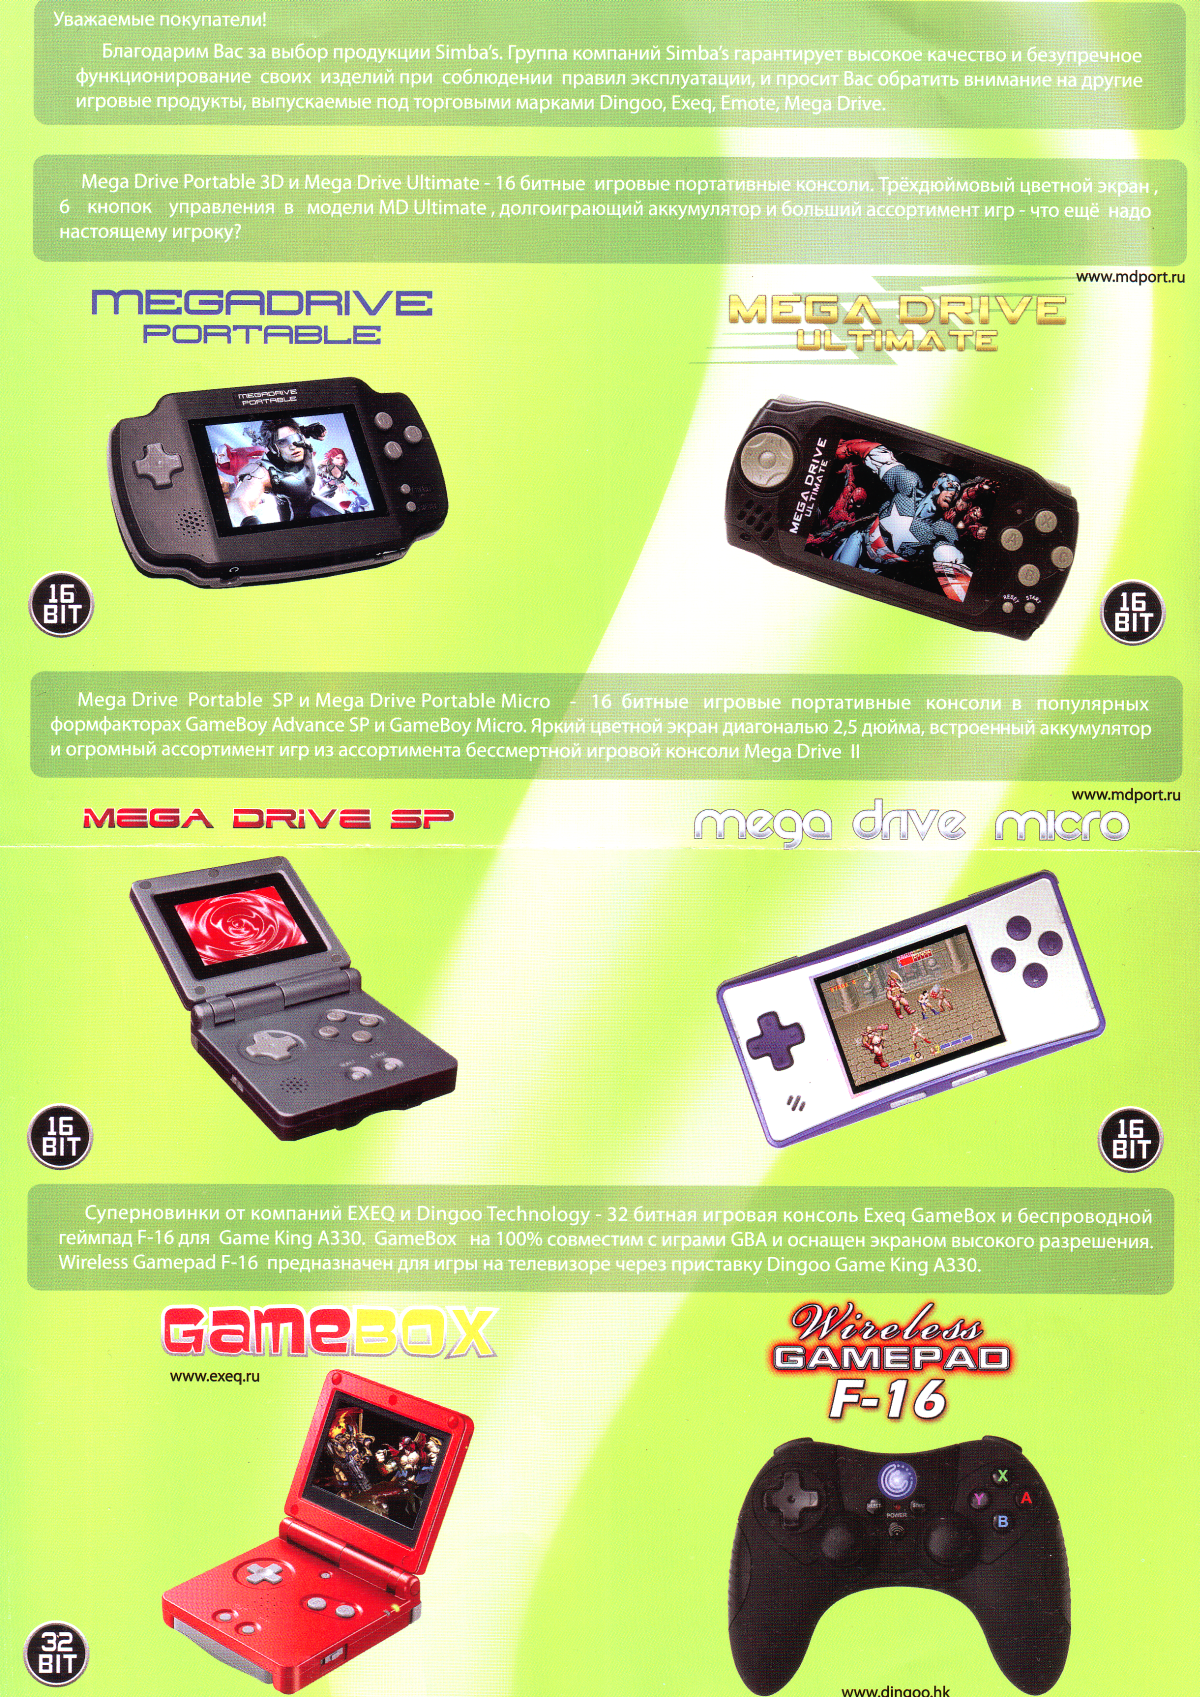 Разбор современного клона NES/Famicom (Денди)